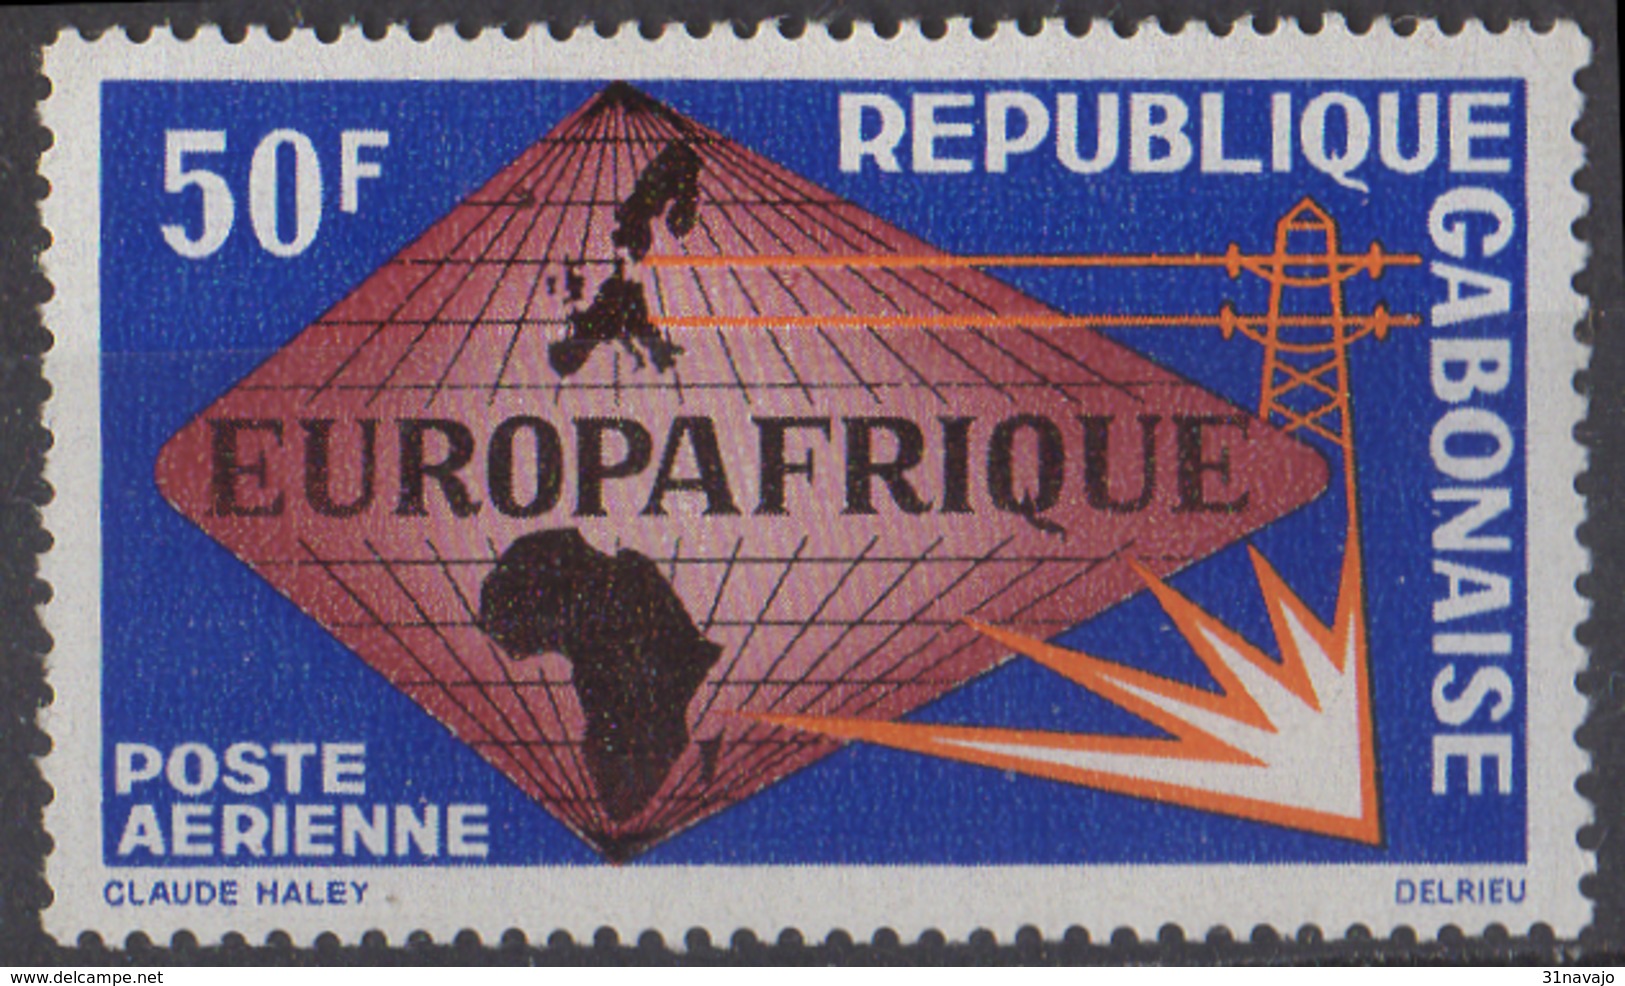 GABON - Europafrique 1965 - Gabon (1960-...)